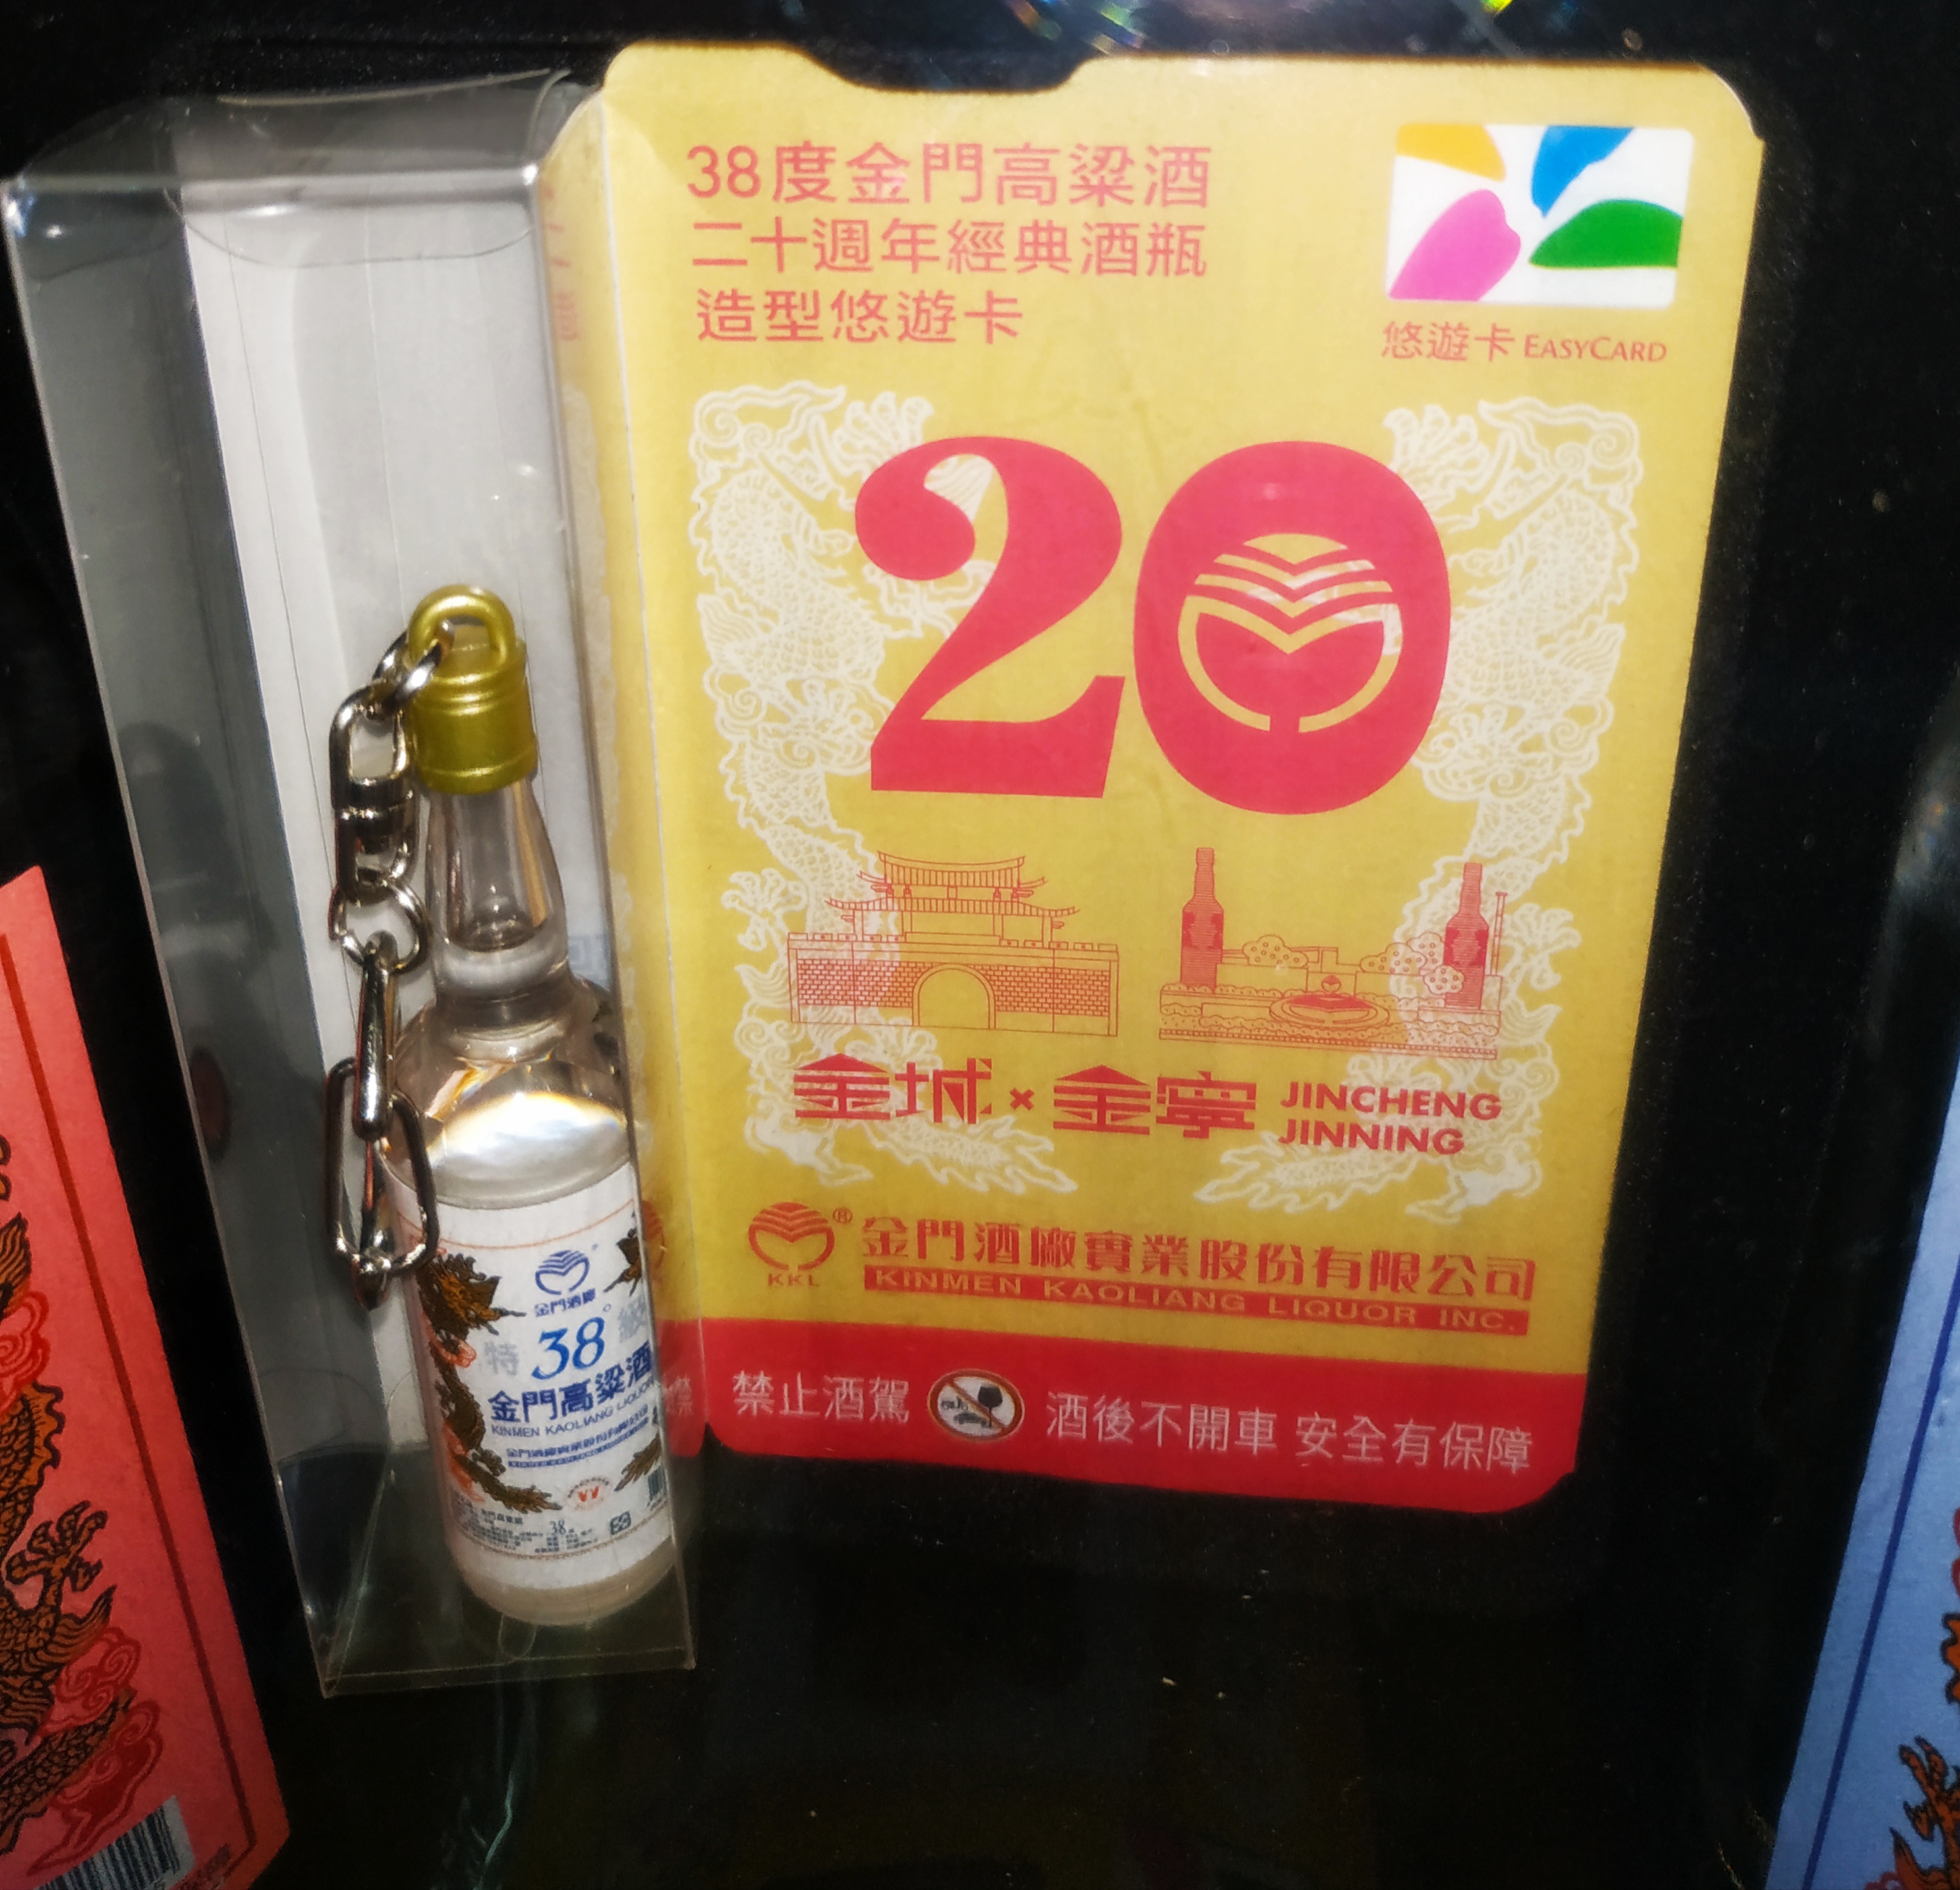 🇹🇼🤤🌾38度金門高粱酒悠遊卡 20週年經典酒瓶造型悠遊卡🌾